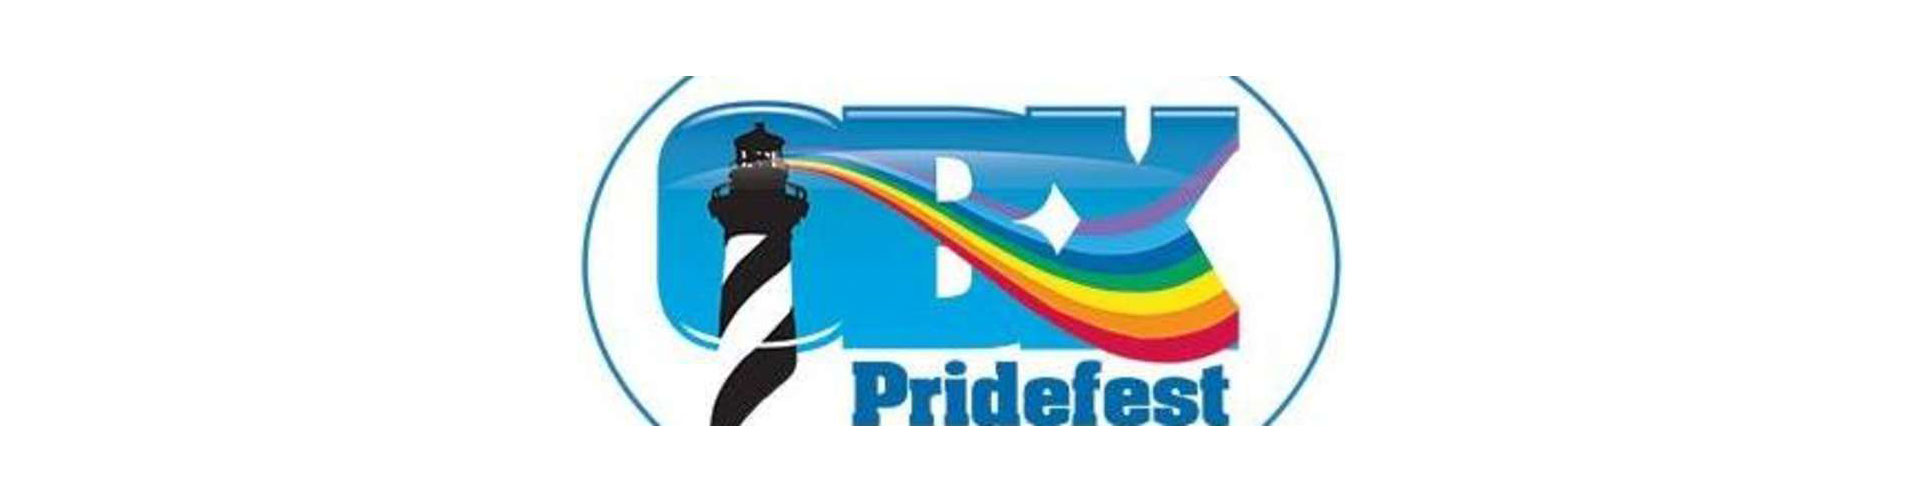 OBX Pridefest